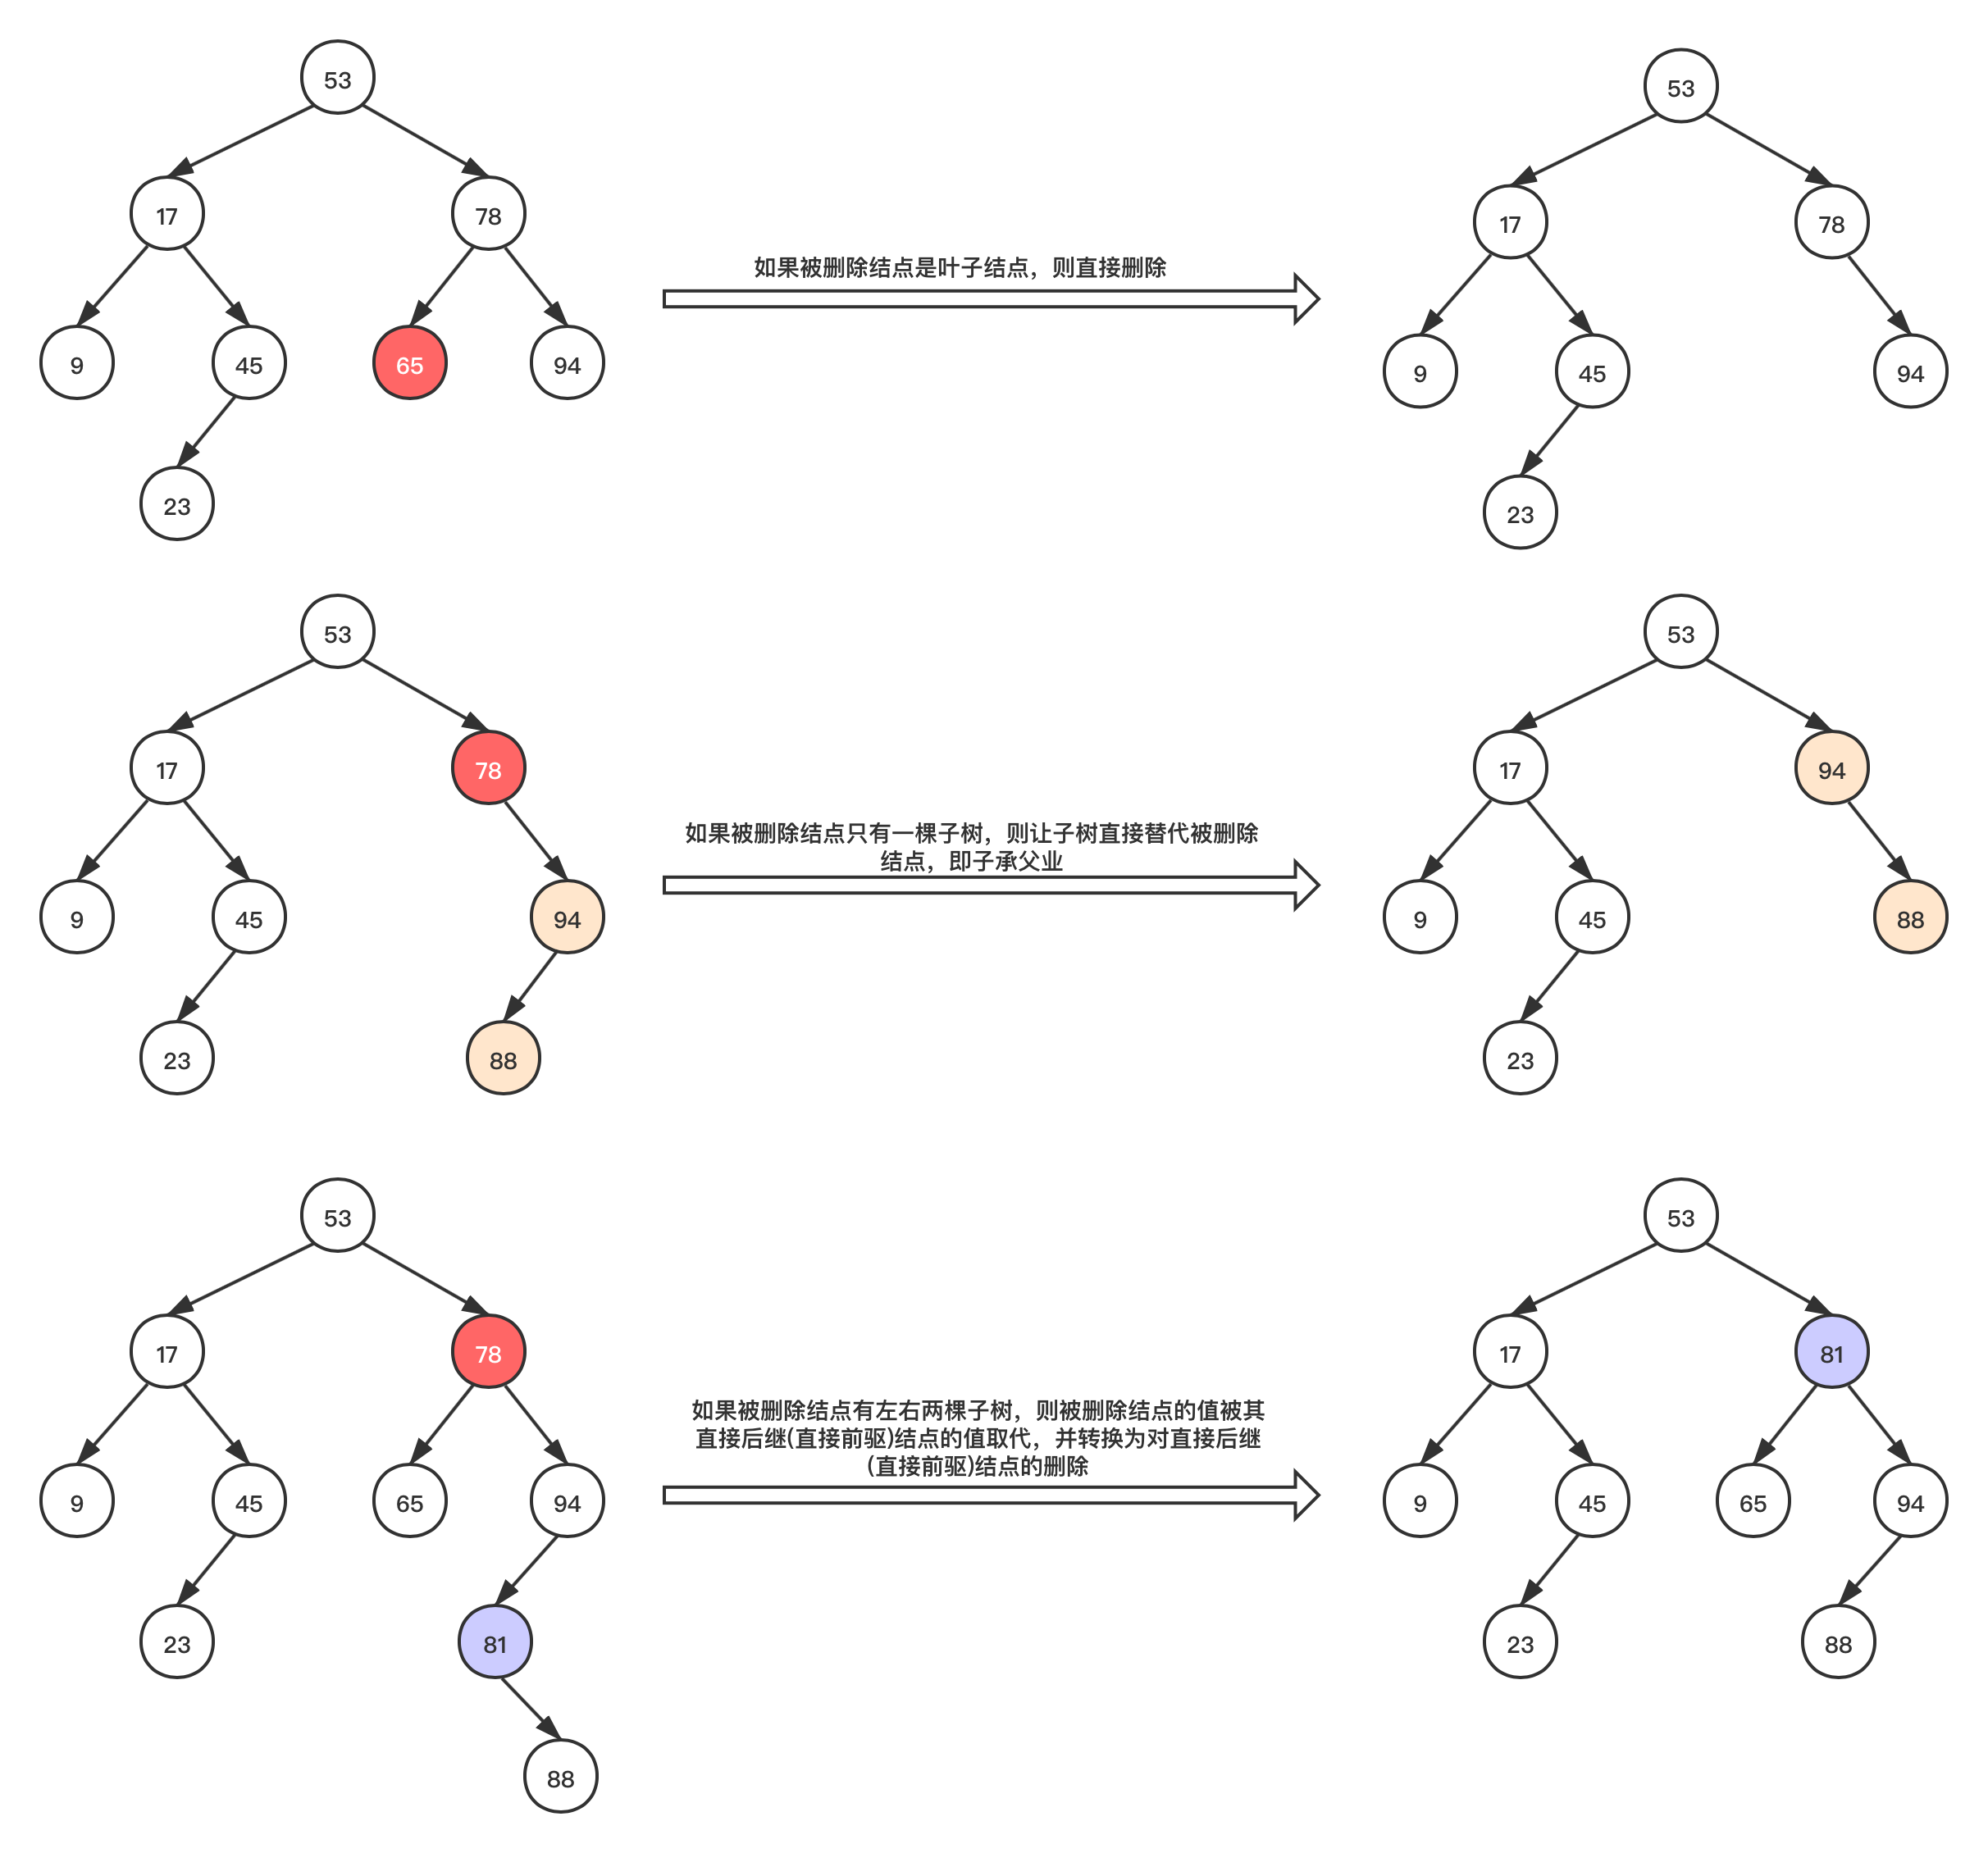 【数据结构】二叉平衡树（AVL）